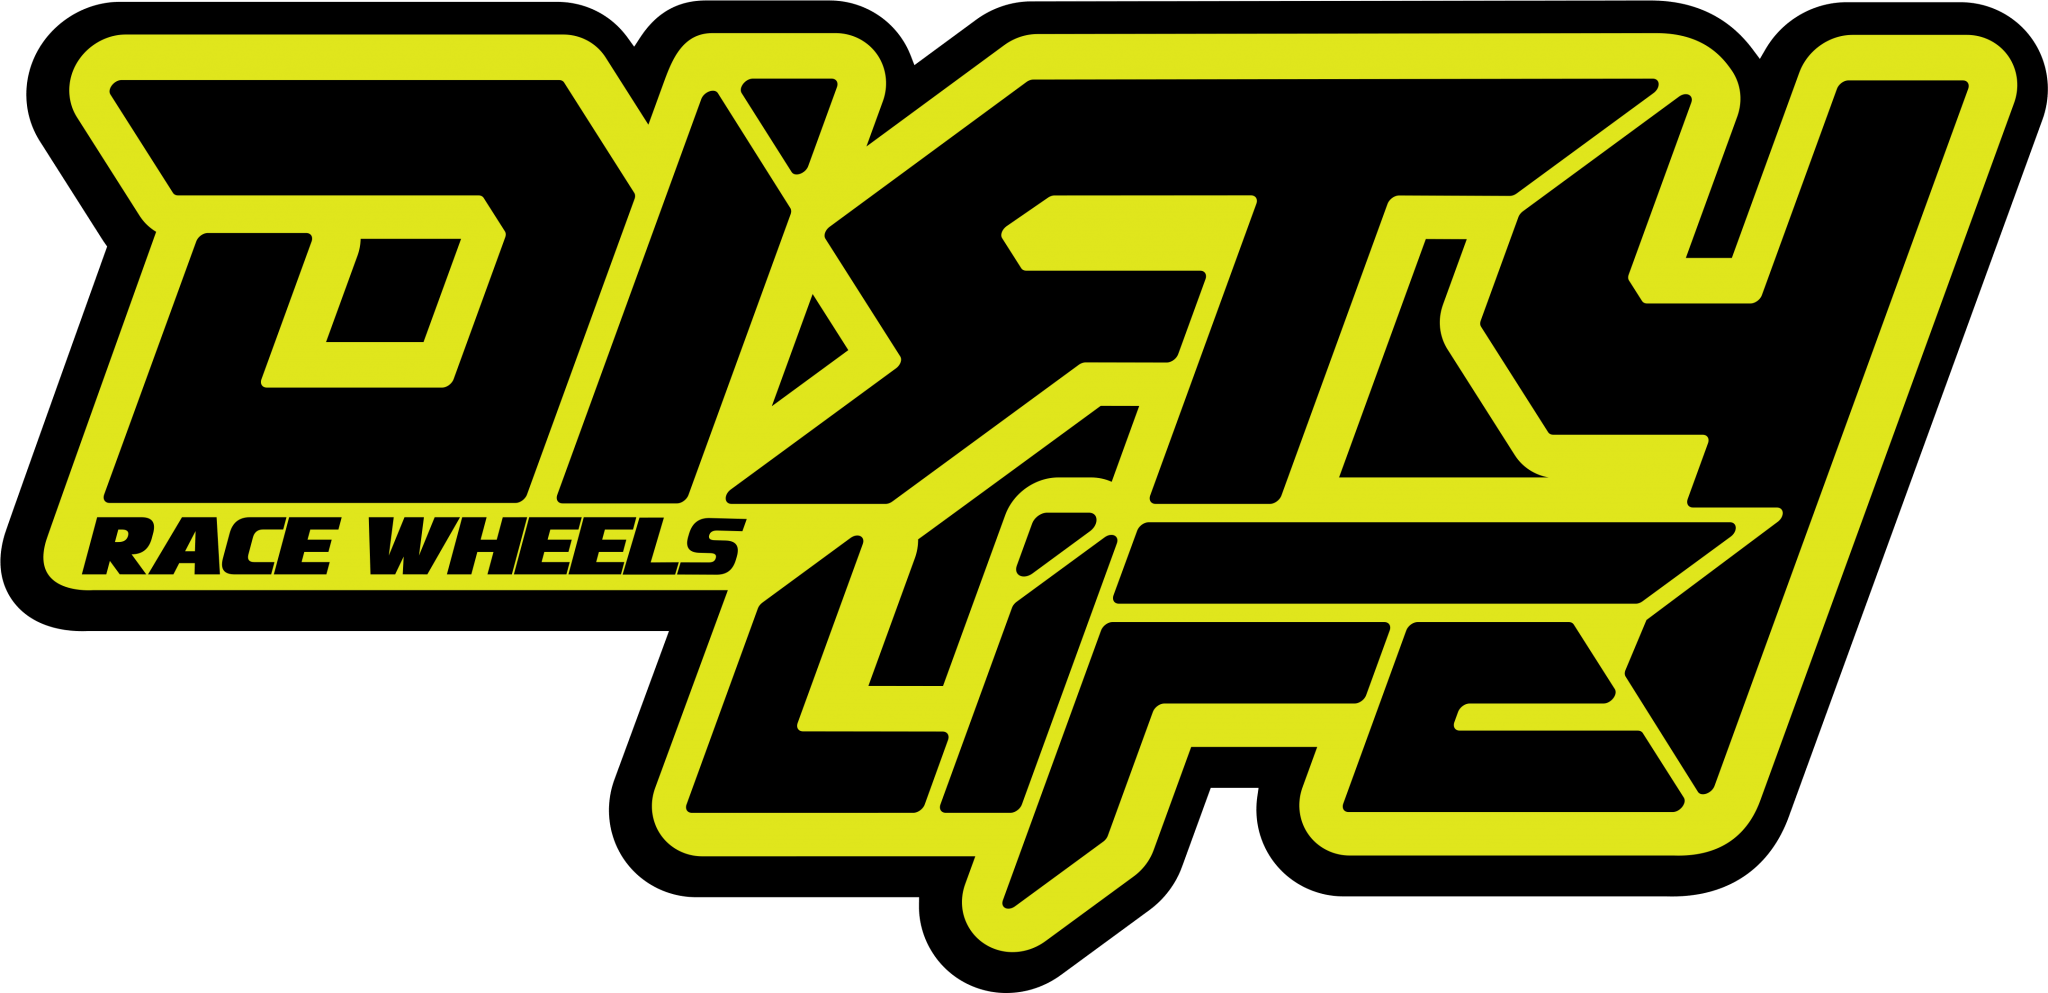 Life is race. Next Wheels лого. Ho Wheels логотип. Dirty лого. O-Z Wheels logo.